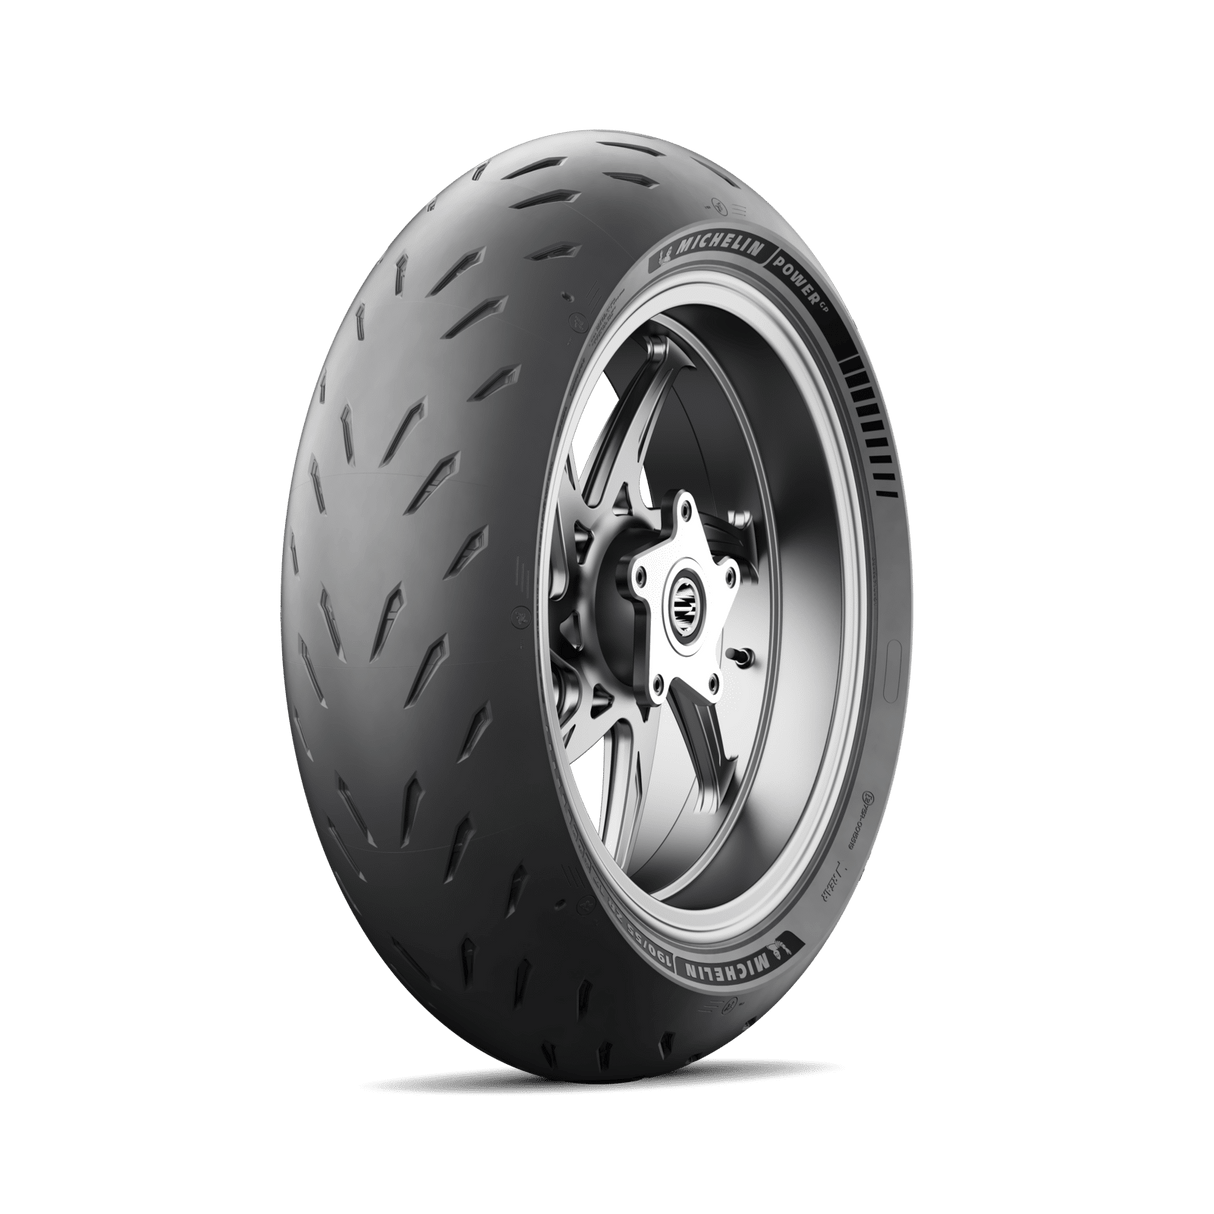 Michelin Power GP 180/55 ZR 17 (73W) Rear Tyre